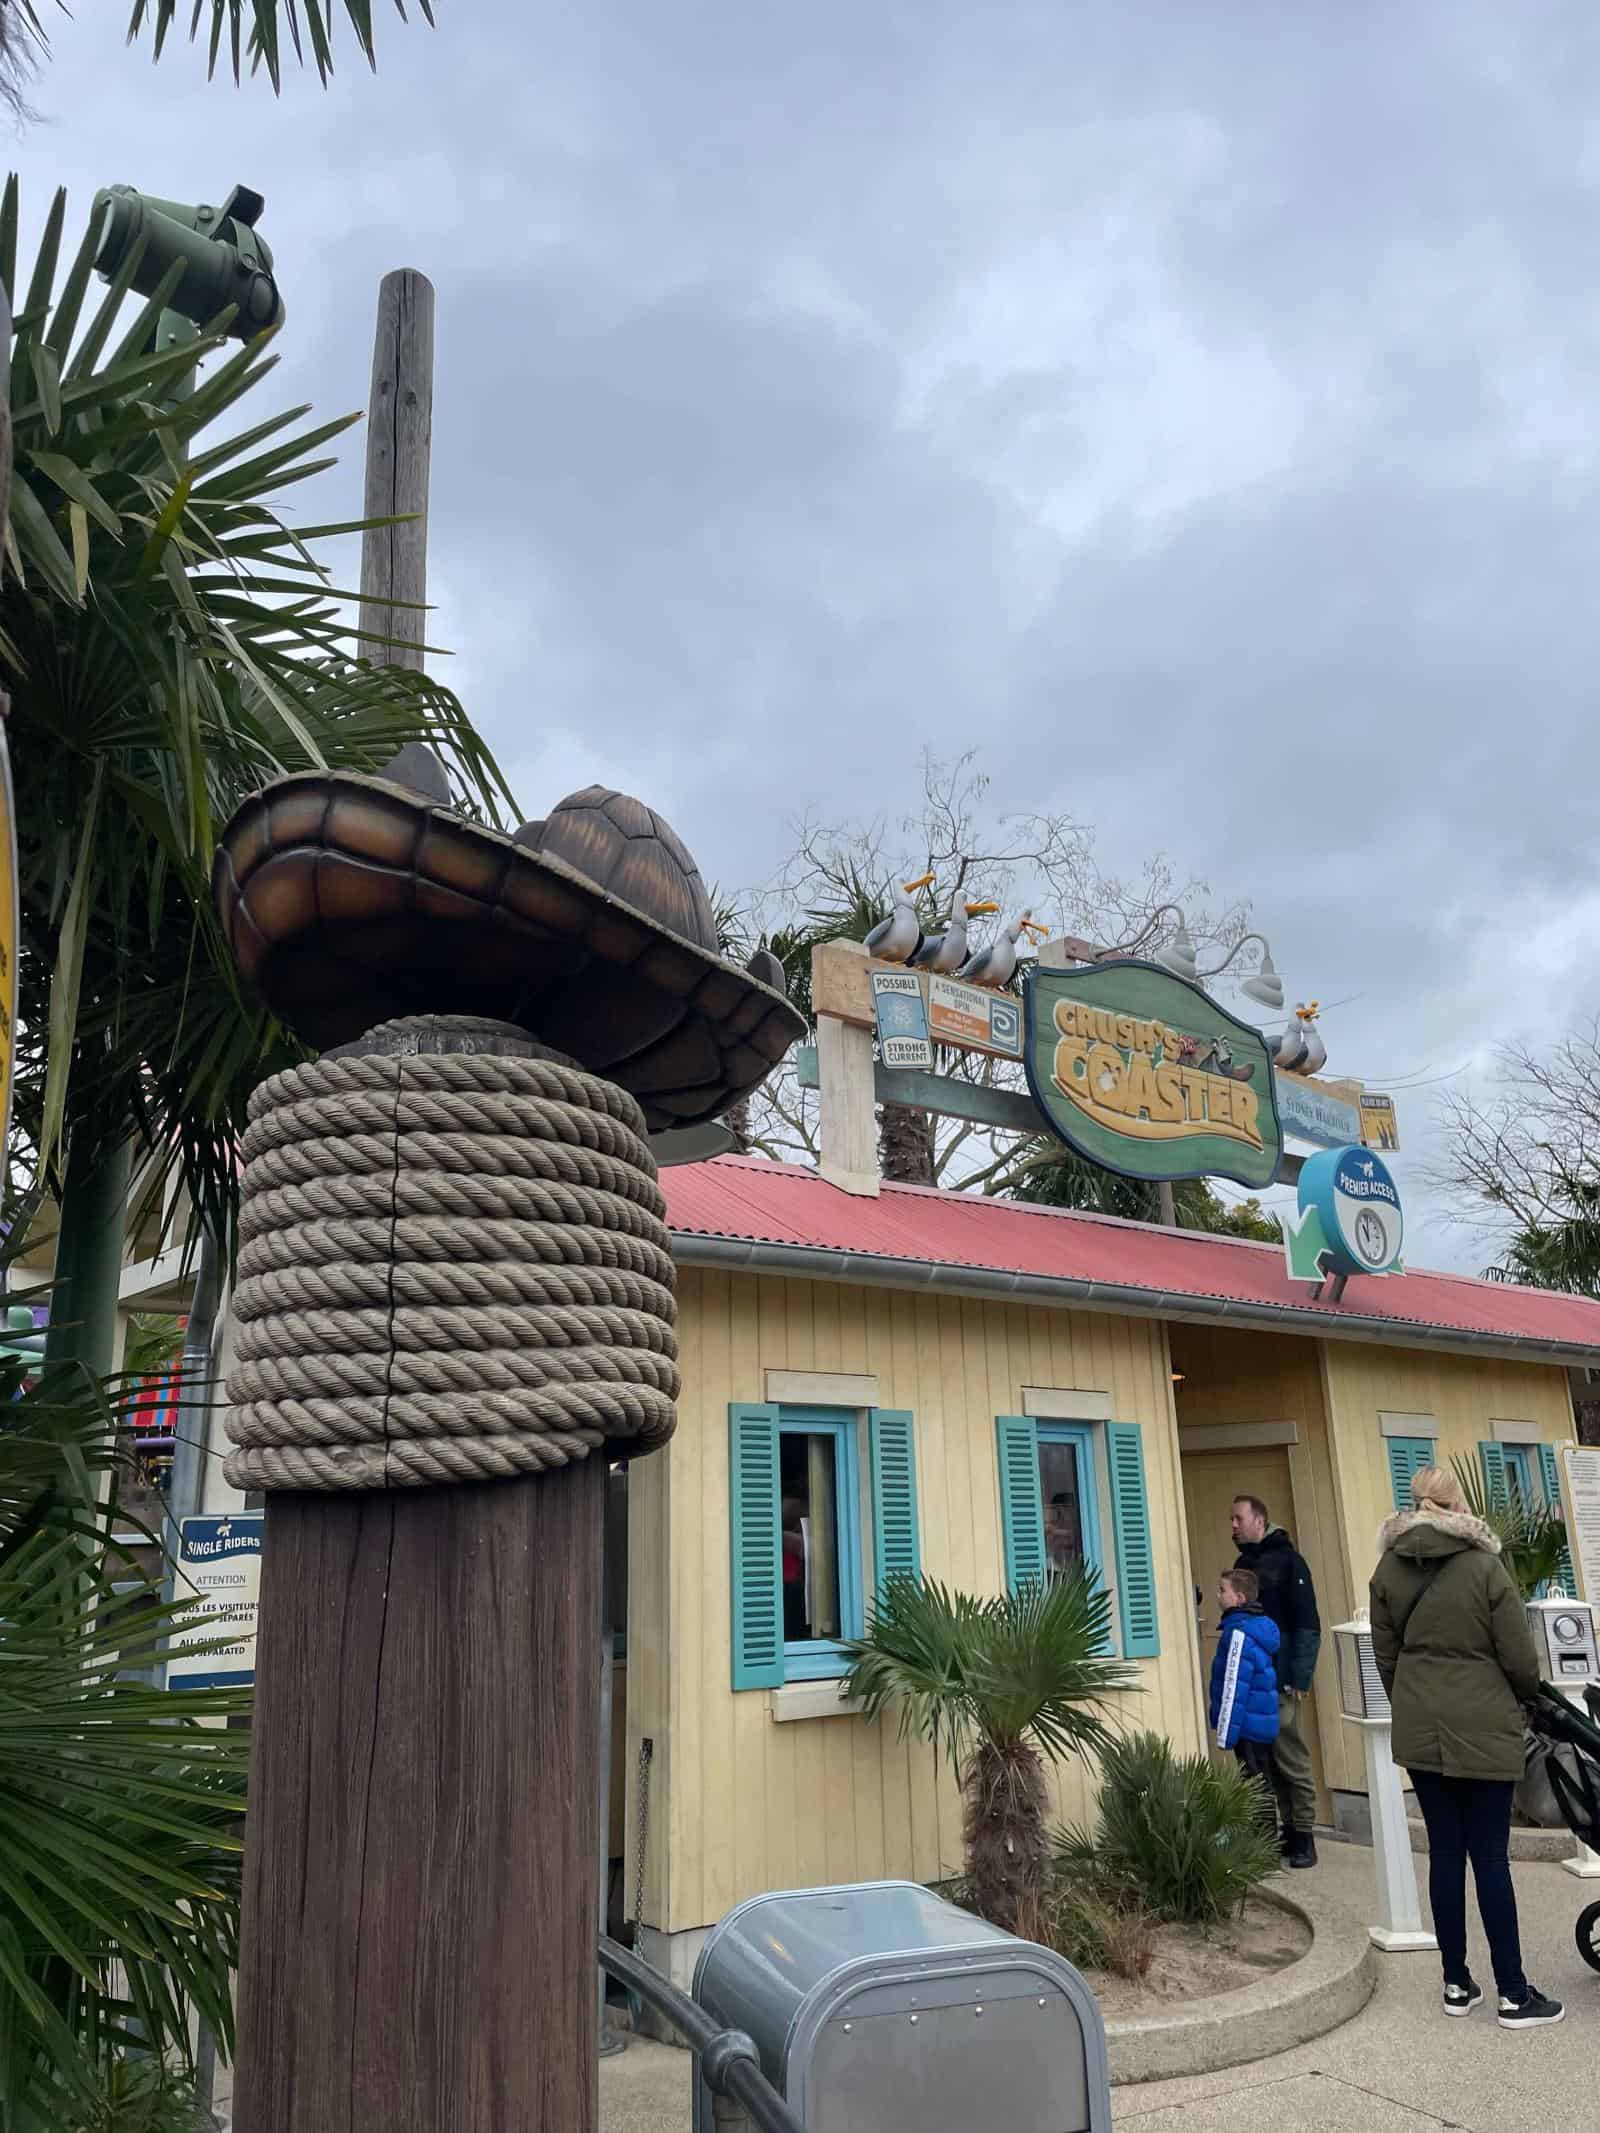 Disneyland Paris Crush's Coaster